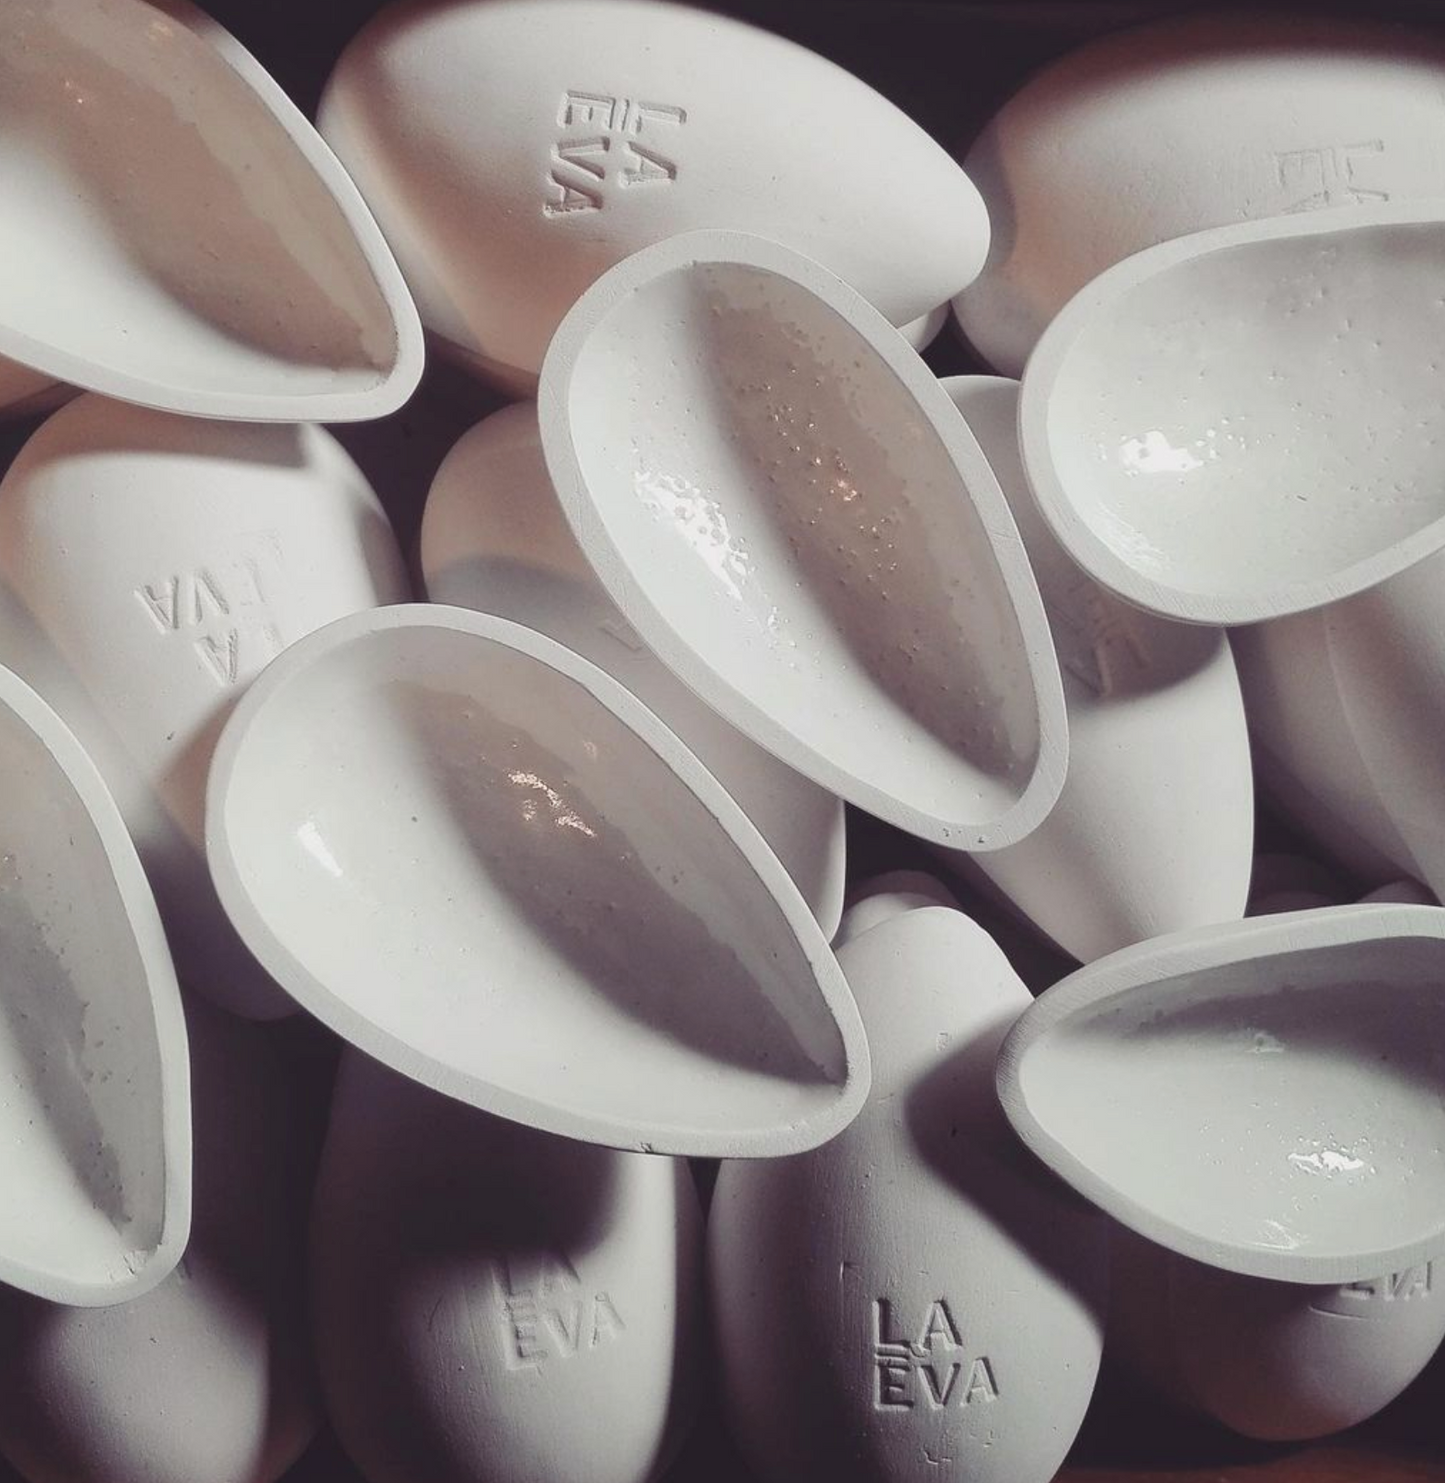 Ceramic scoop, La Eva - Plum & Belle